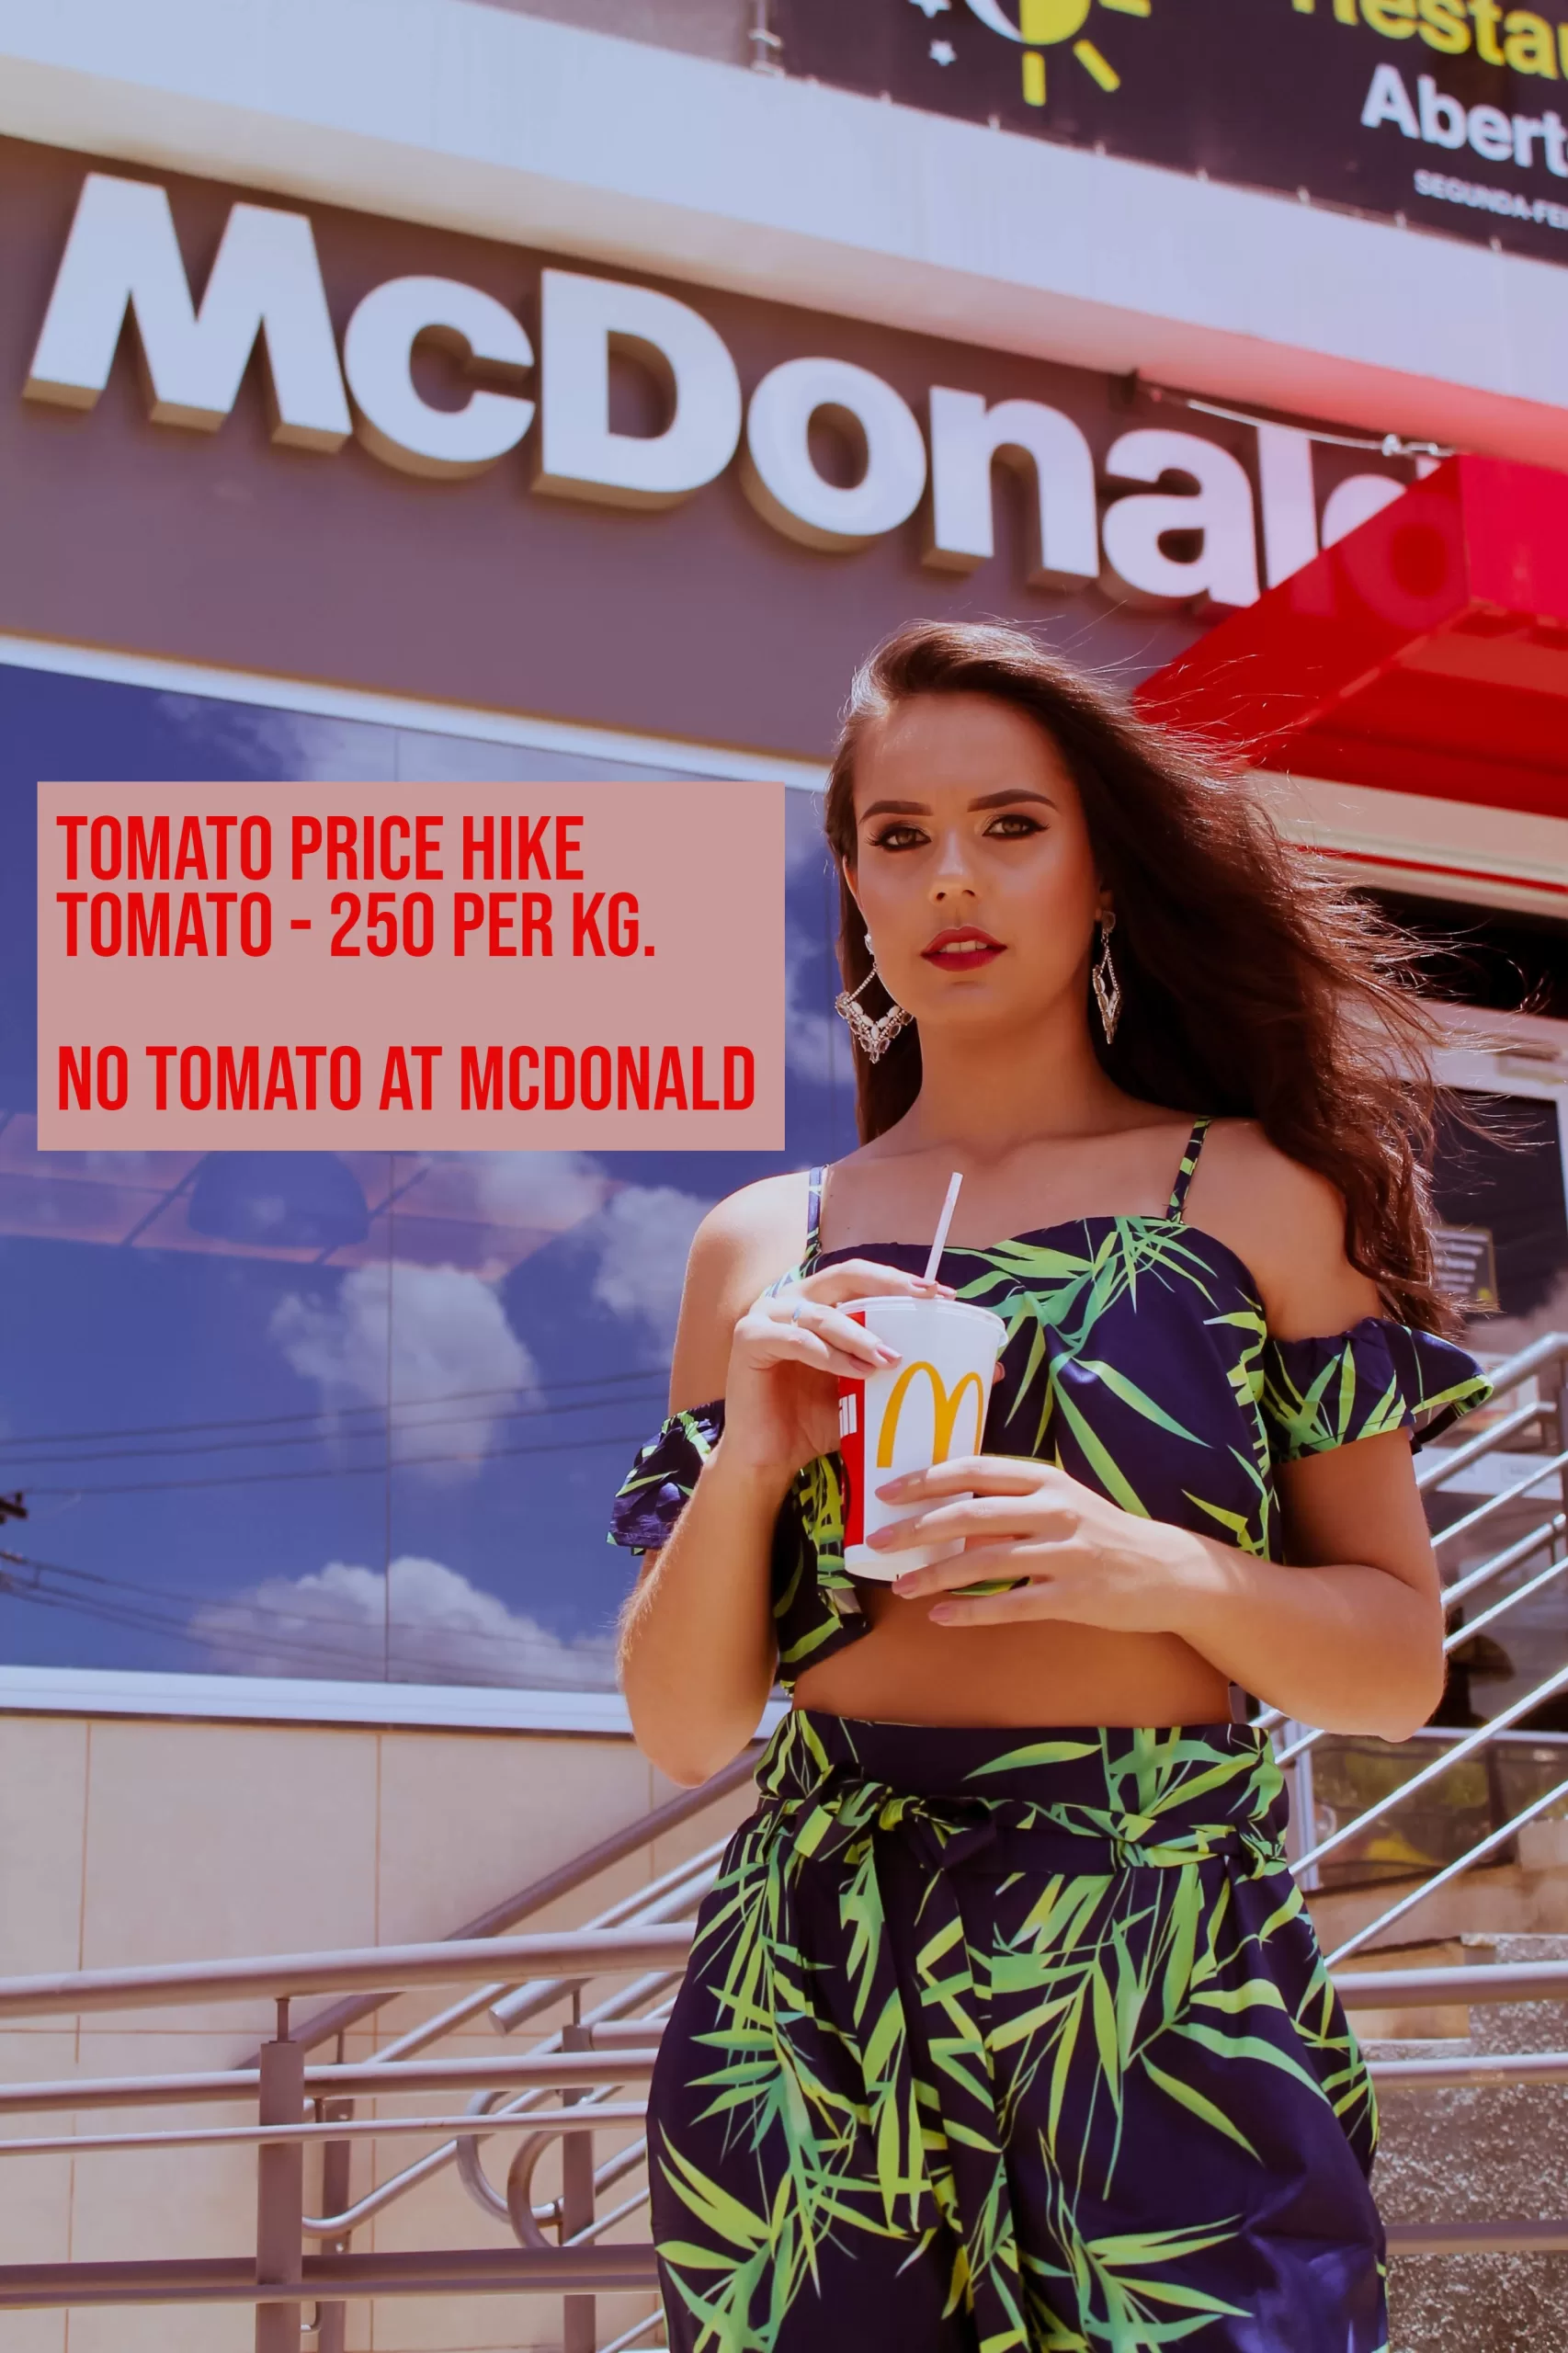 Tomato Price Hike | 250/kg टमाटर की कीमतों में उछाल ने McDonald को हिला दिया